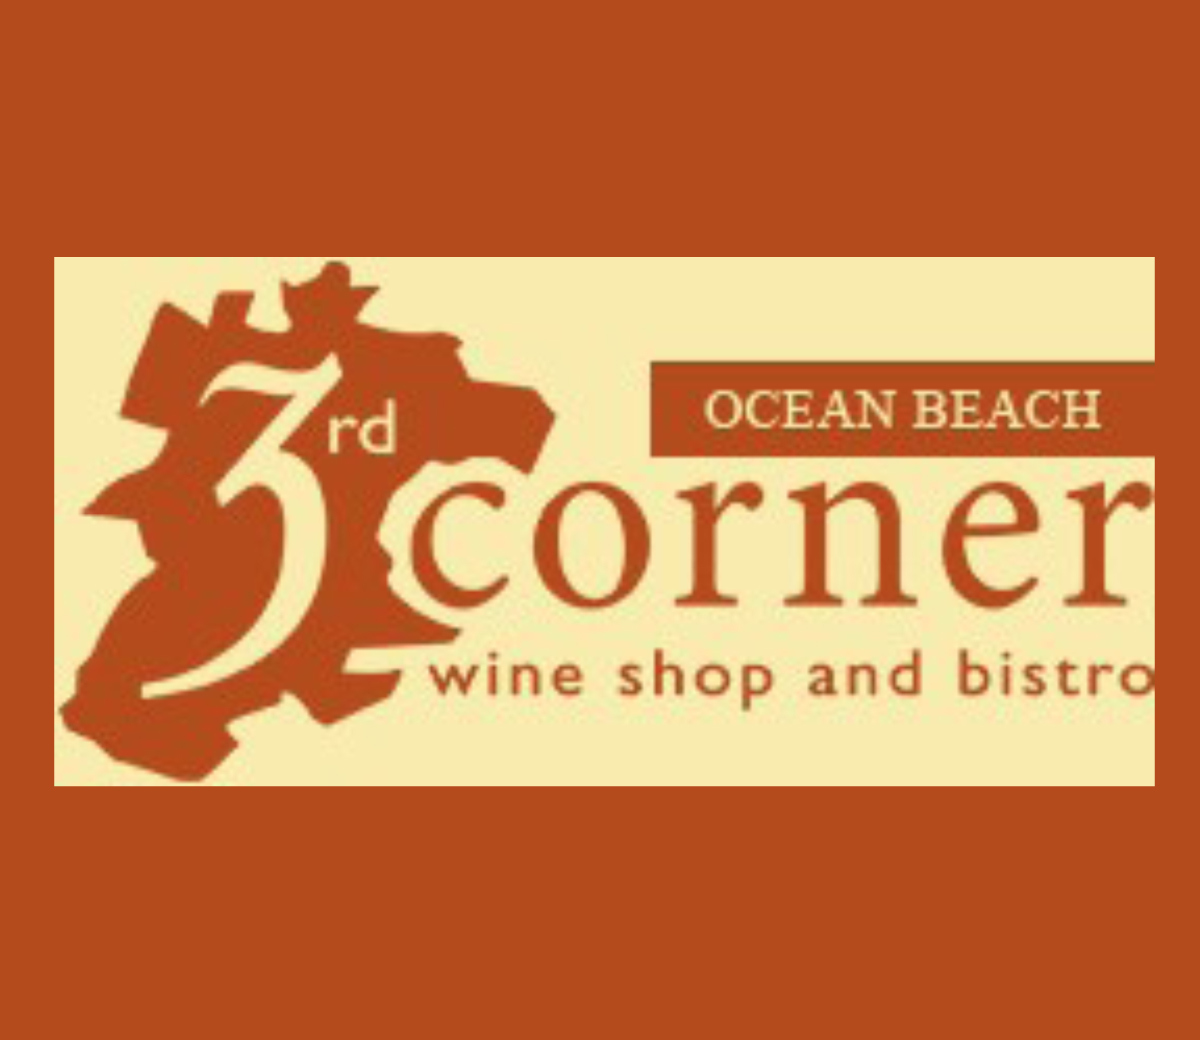 The 3rd Corner Ocean Beach